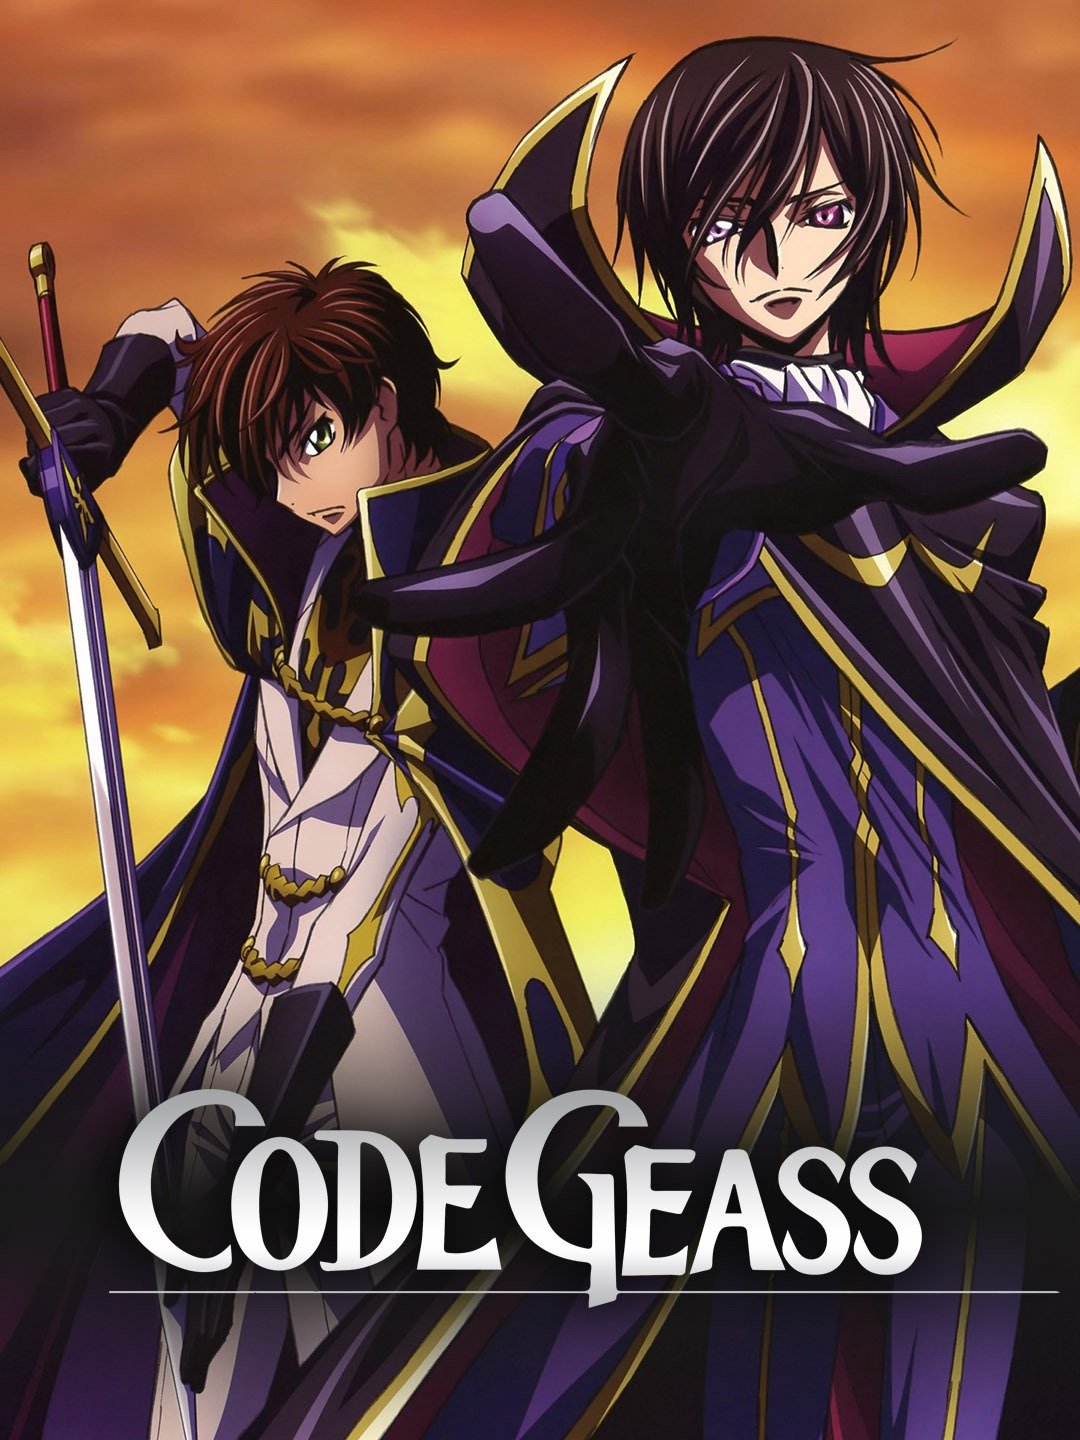 Code Geass  Anime Review  Nefarious Reviews